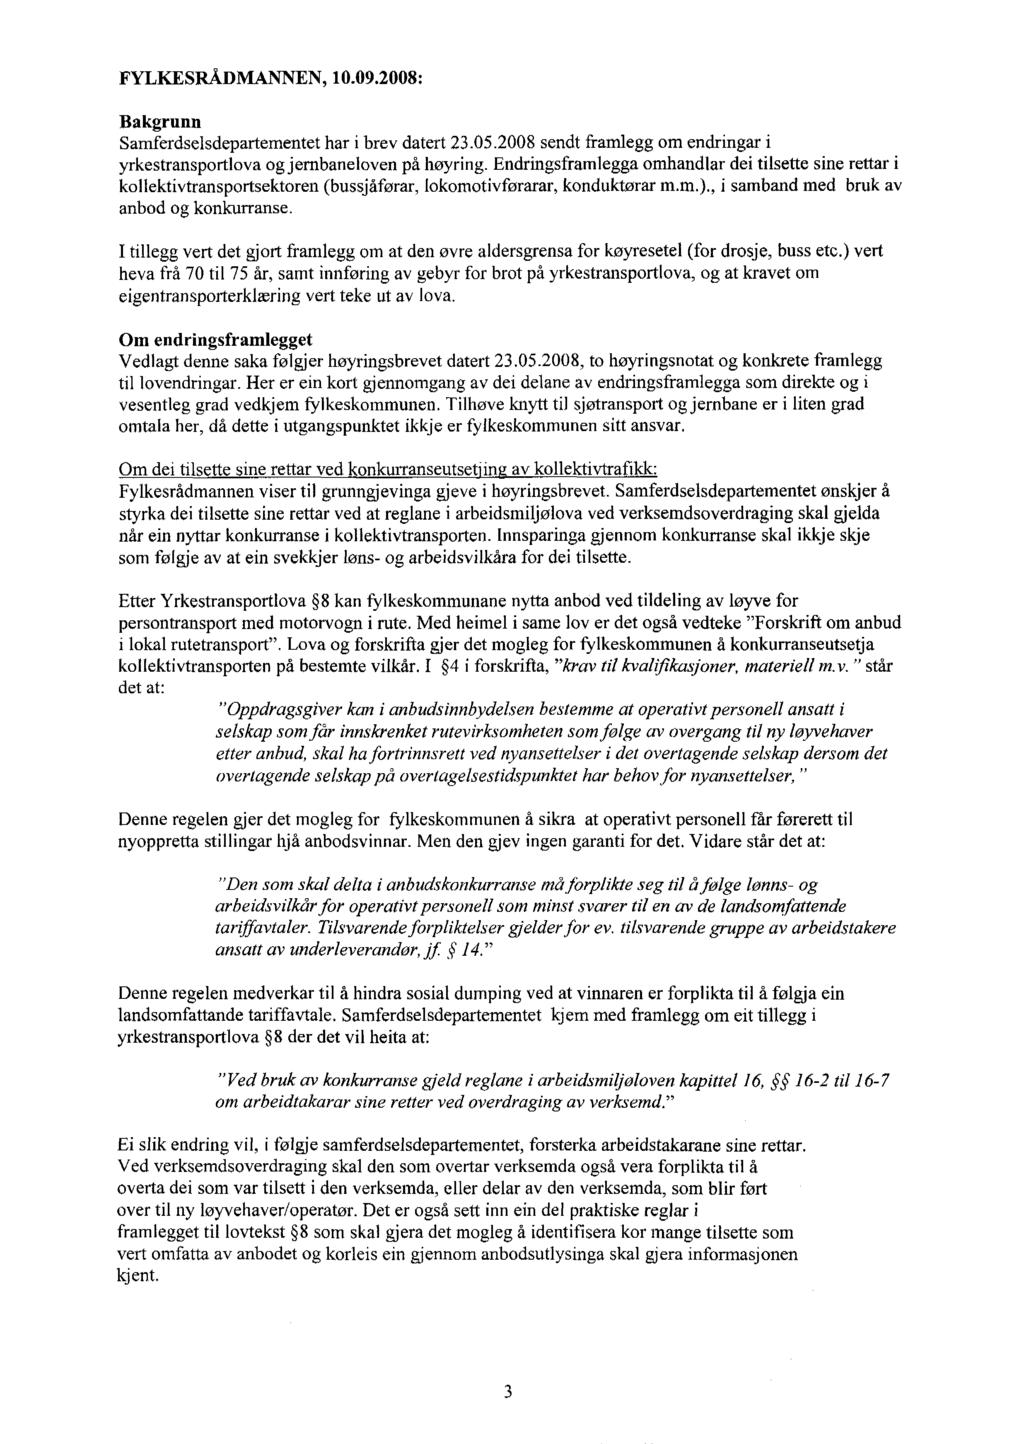 FYLKESRÅDMANNEN, 10.09.2008: Bakgrunn Samferdselsdepartementet har i brev datert 23.05.2008 sendt framlegg om endringar i yrkestransportlova og jernbaneloven på høyring.